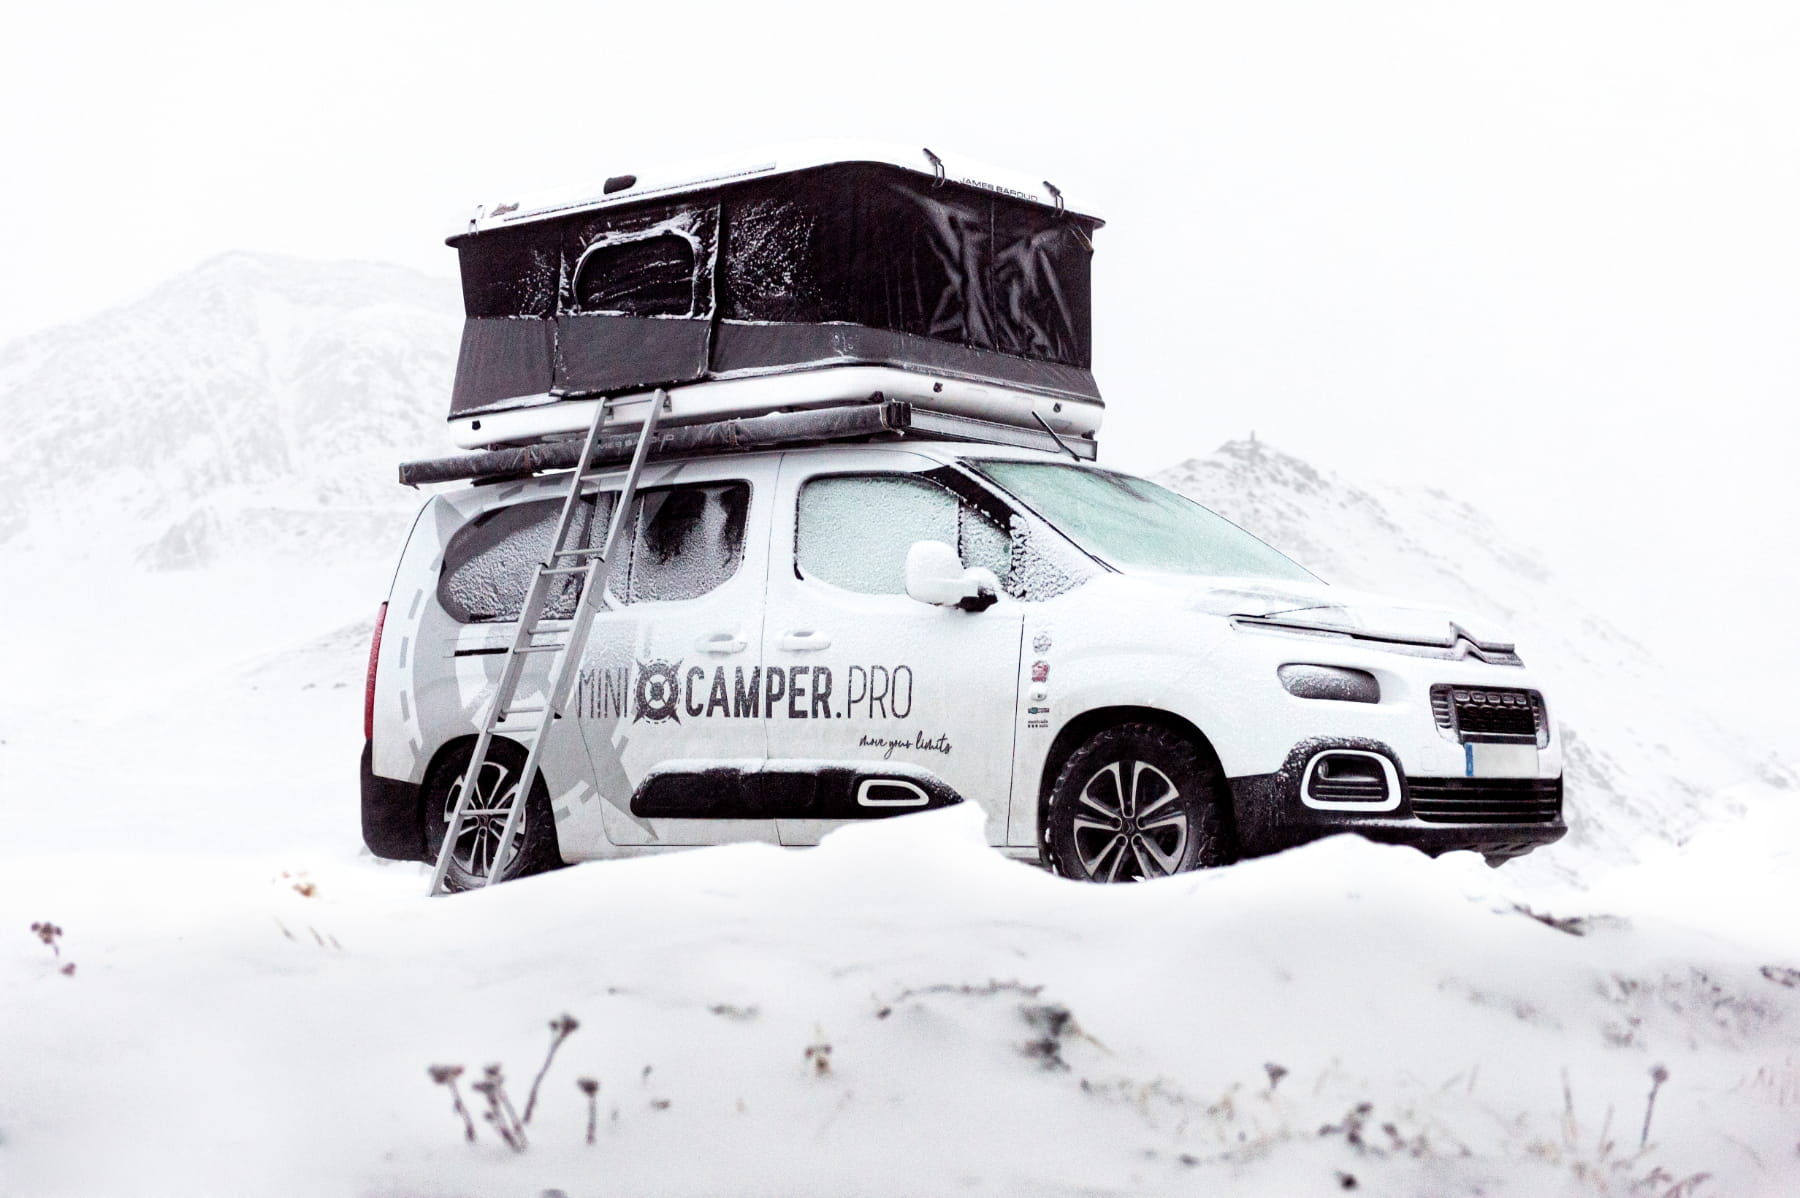 Minicamper viajar en invierno - Consejos para viajar en invierno en camper